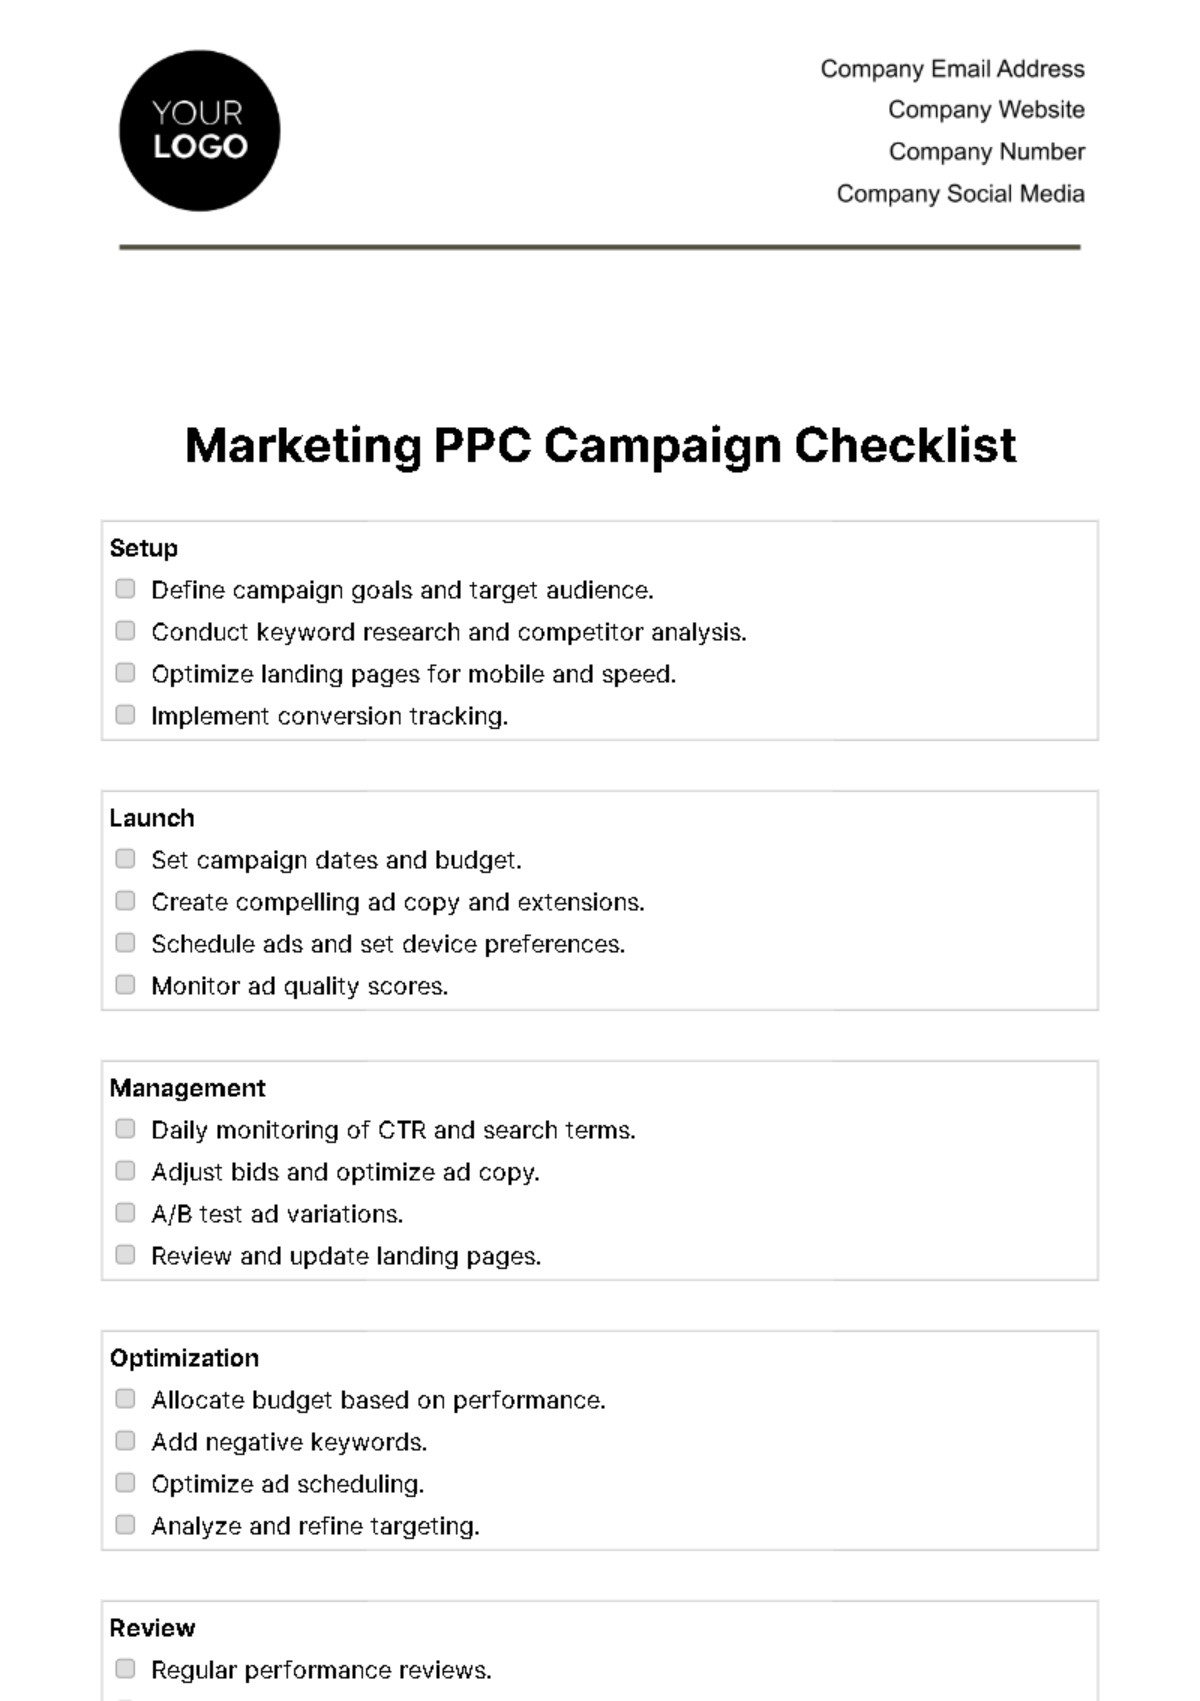 Marketing PPC Campaign Checklist Template